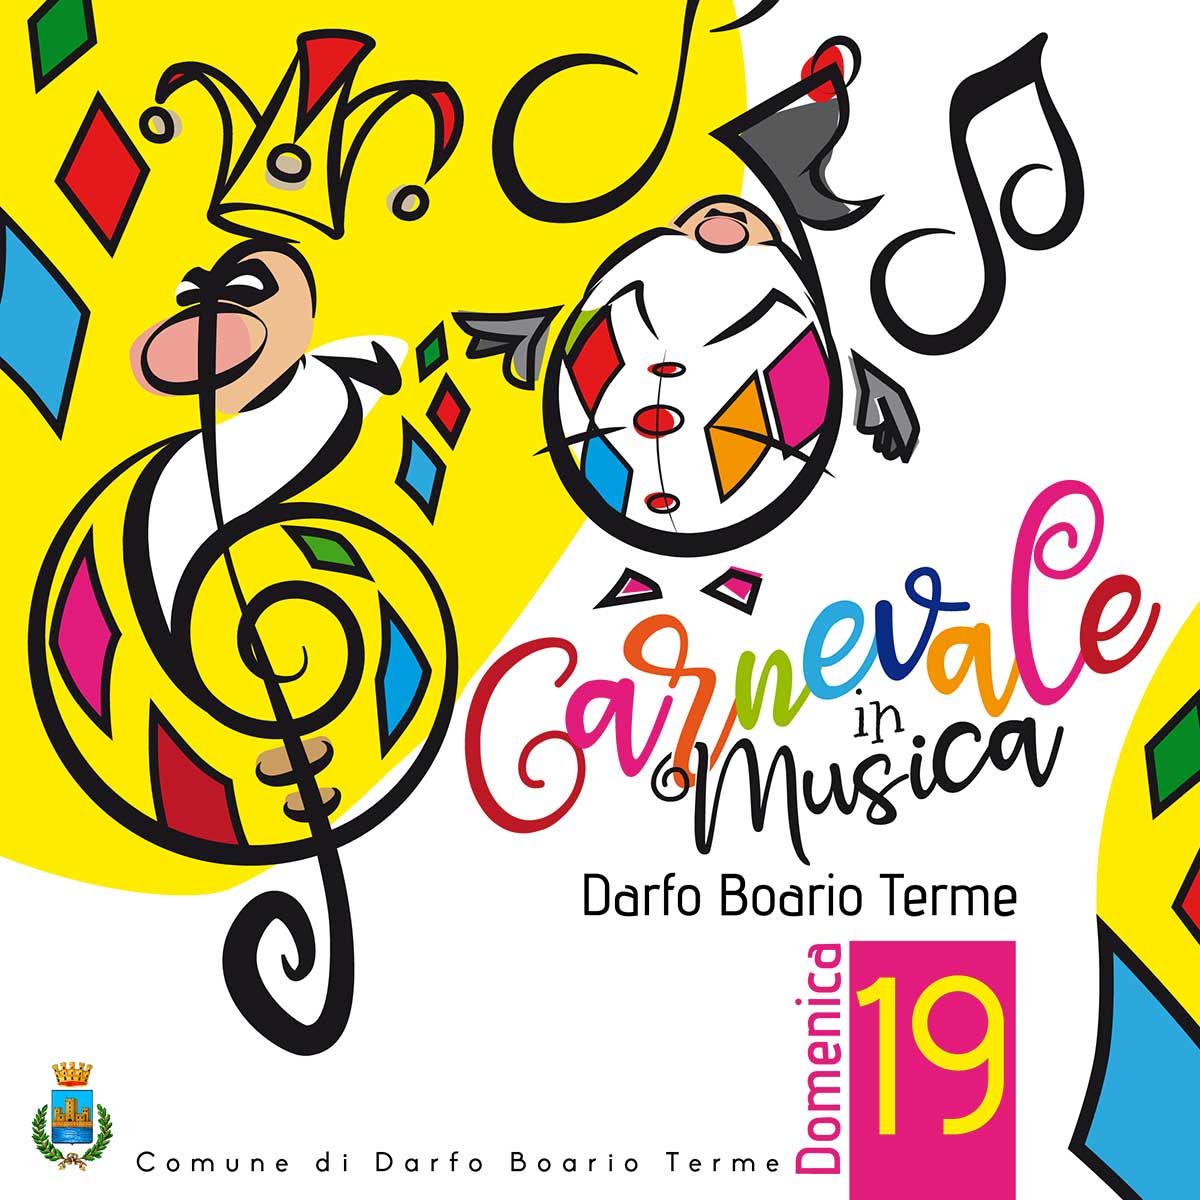 Darfo-Boario-carnevale-in-musica-2023